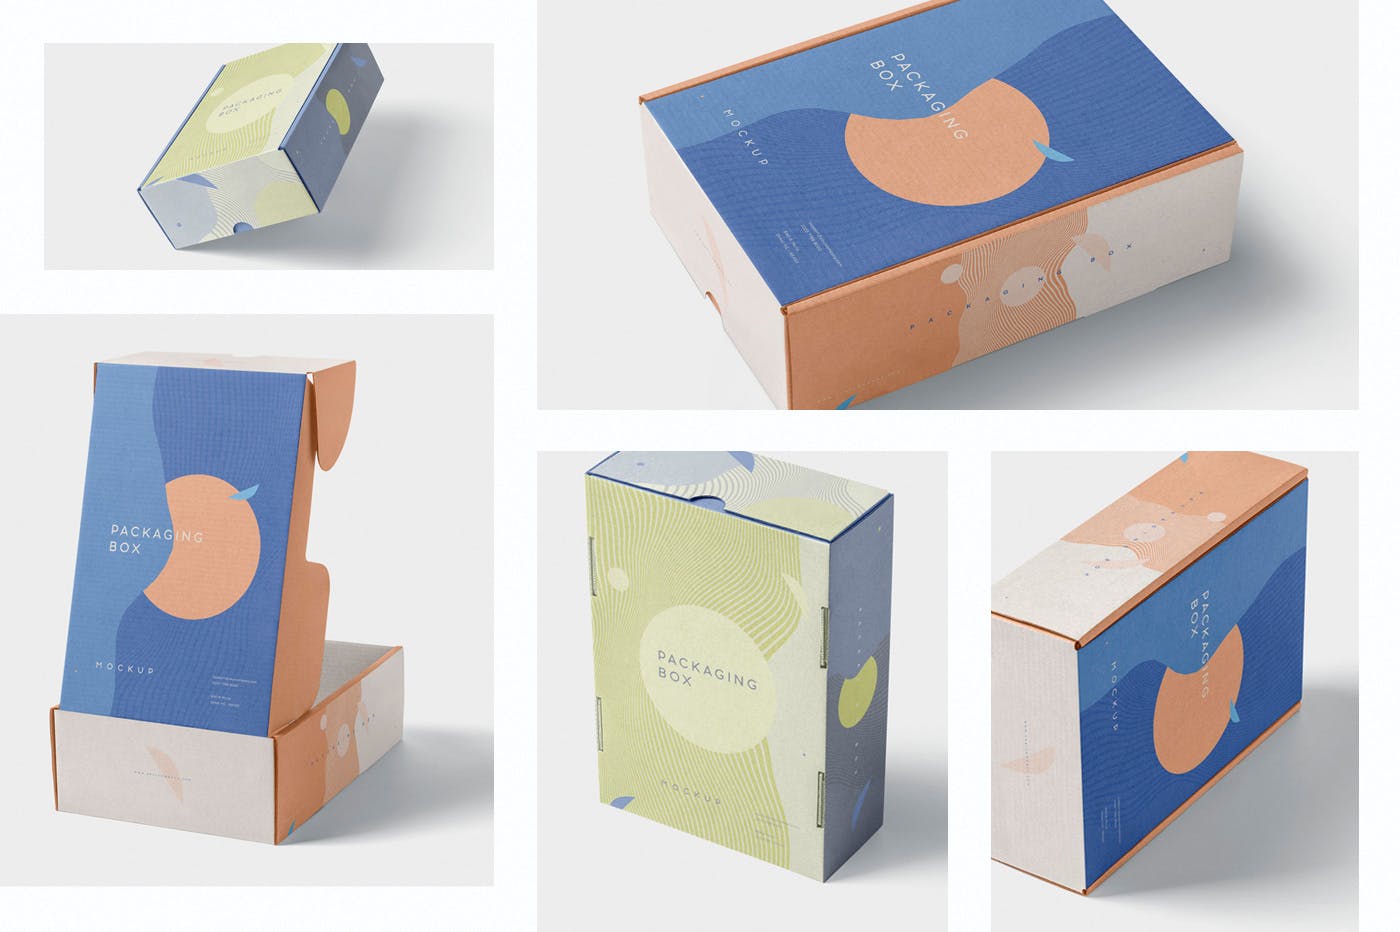 矩形包装盒设计效果图多角度预览样机 5 Rectangular Packaging Box Mockups插图(1)